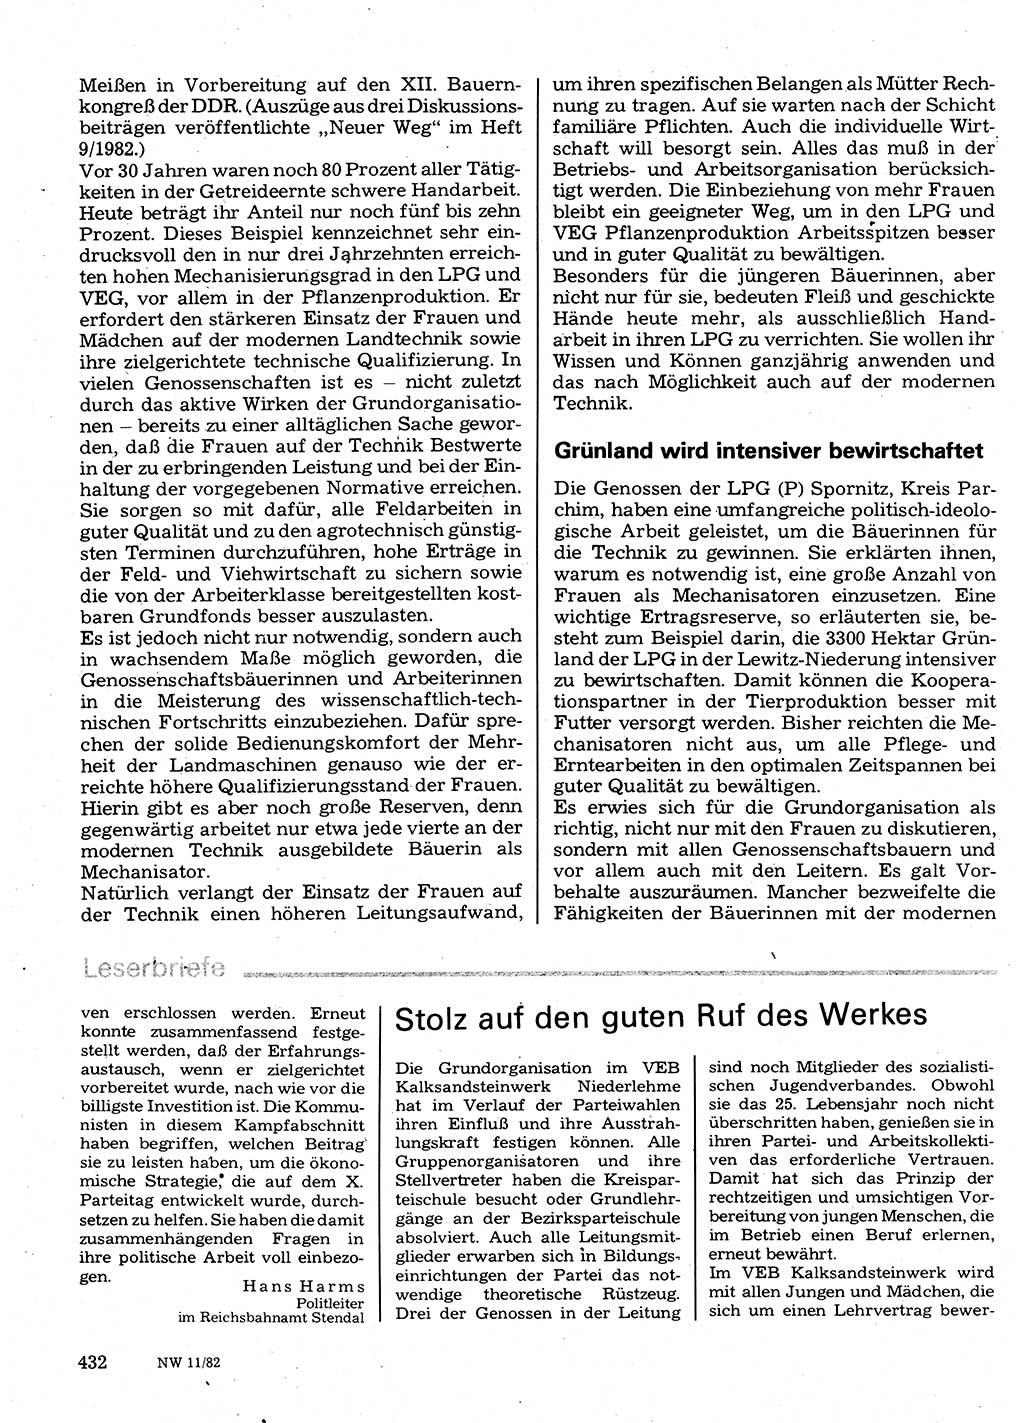 Neuer Weg (NW), Organ des Zentralkomitees (ZK) der SED (Sozialistische Einheitspartei Deutschlands) für Fragen des Parteilebens, 37. Jahrgang [Deutsche Demokratische Republik (DDR)] 1982, Seite 432 (NW ZK SED DDR 1982, S. 432)